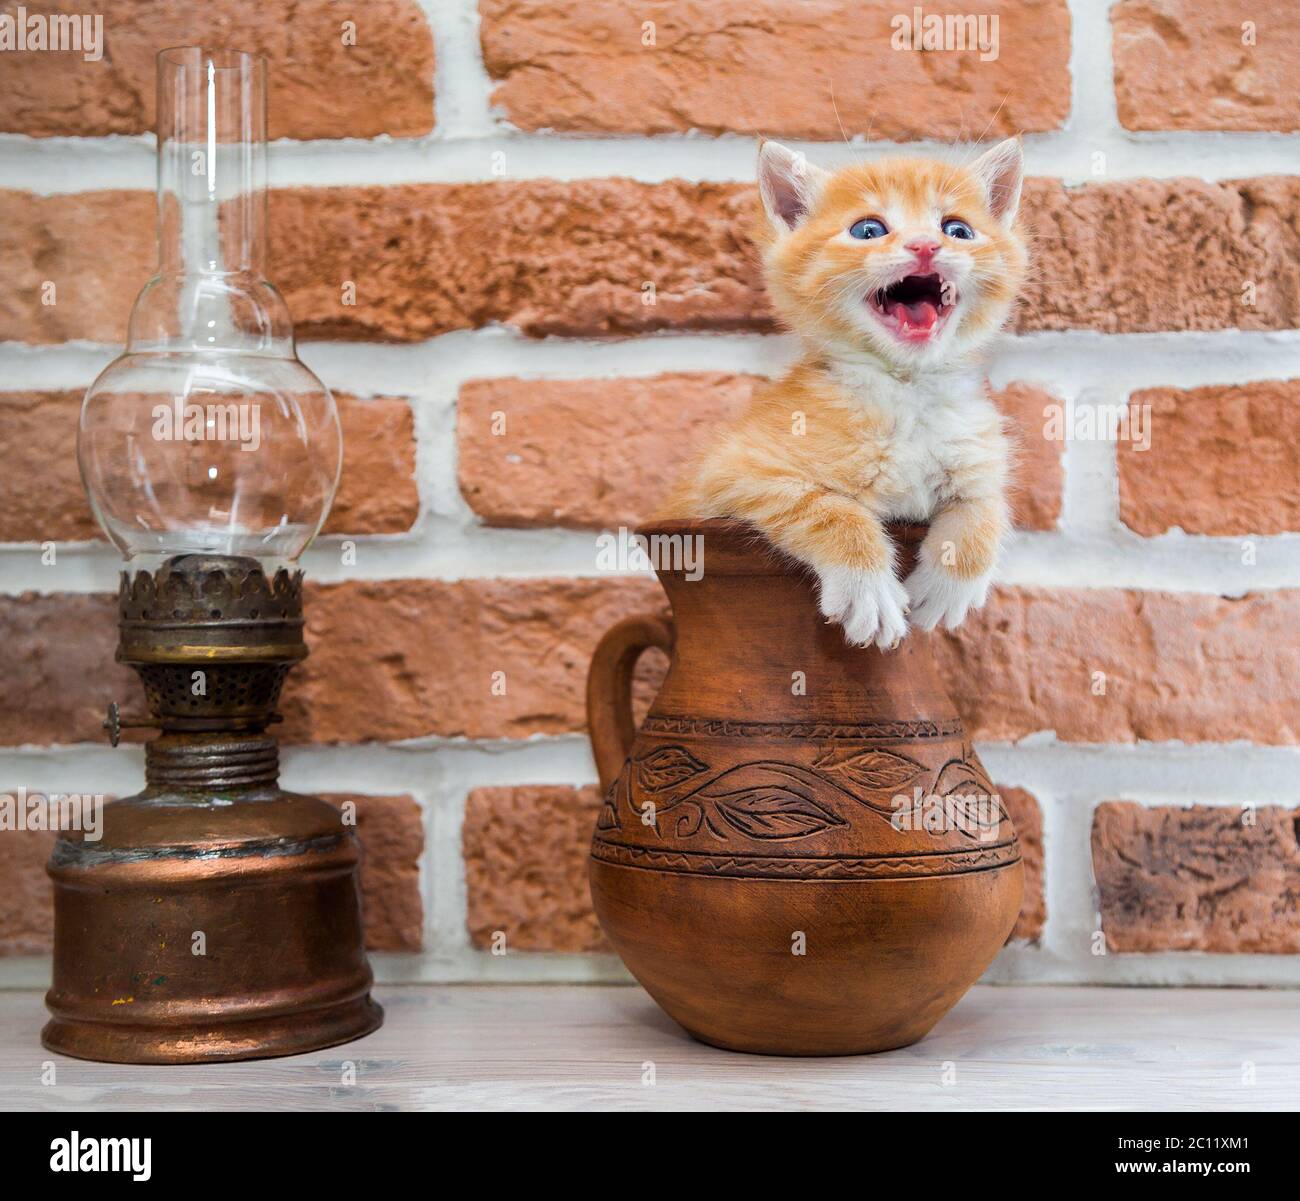 Cuccioli in un vaso, curiosità, arrabbiato Foto Stock